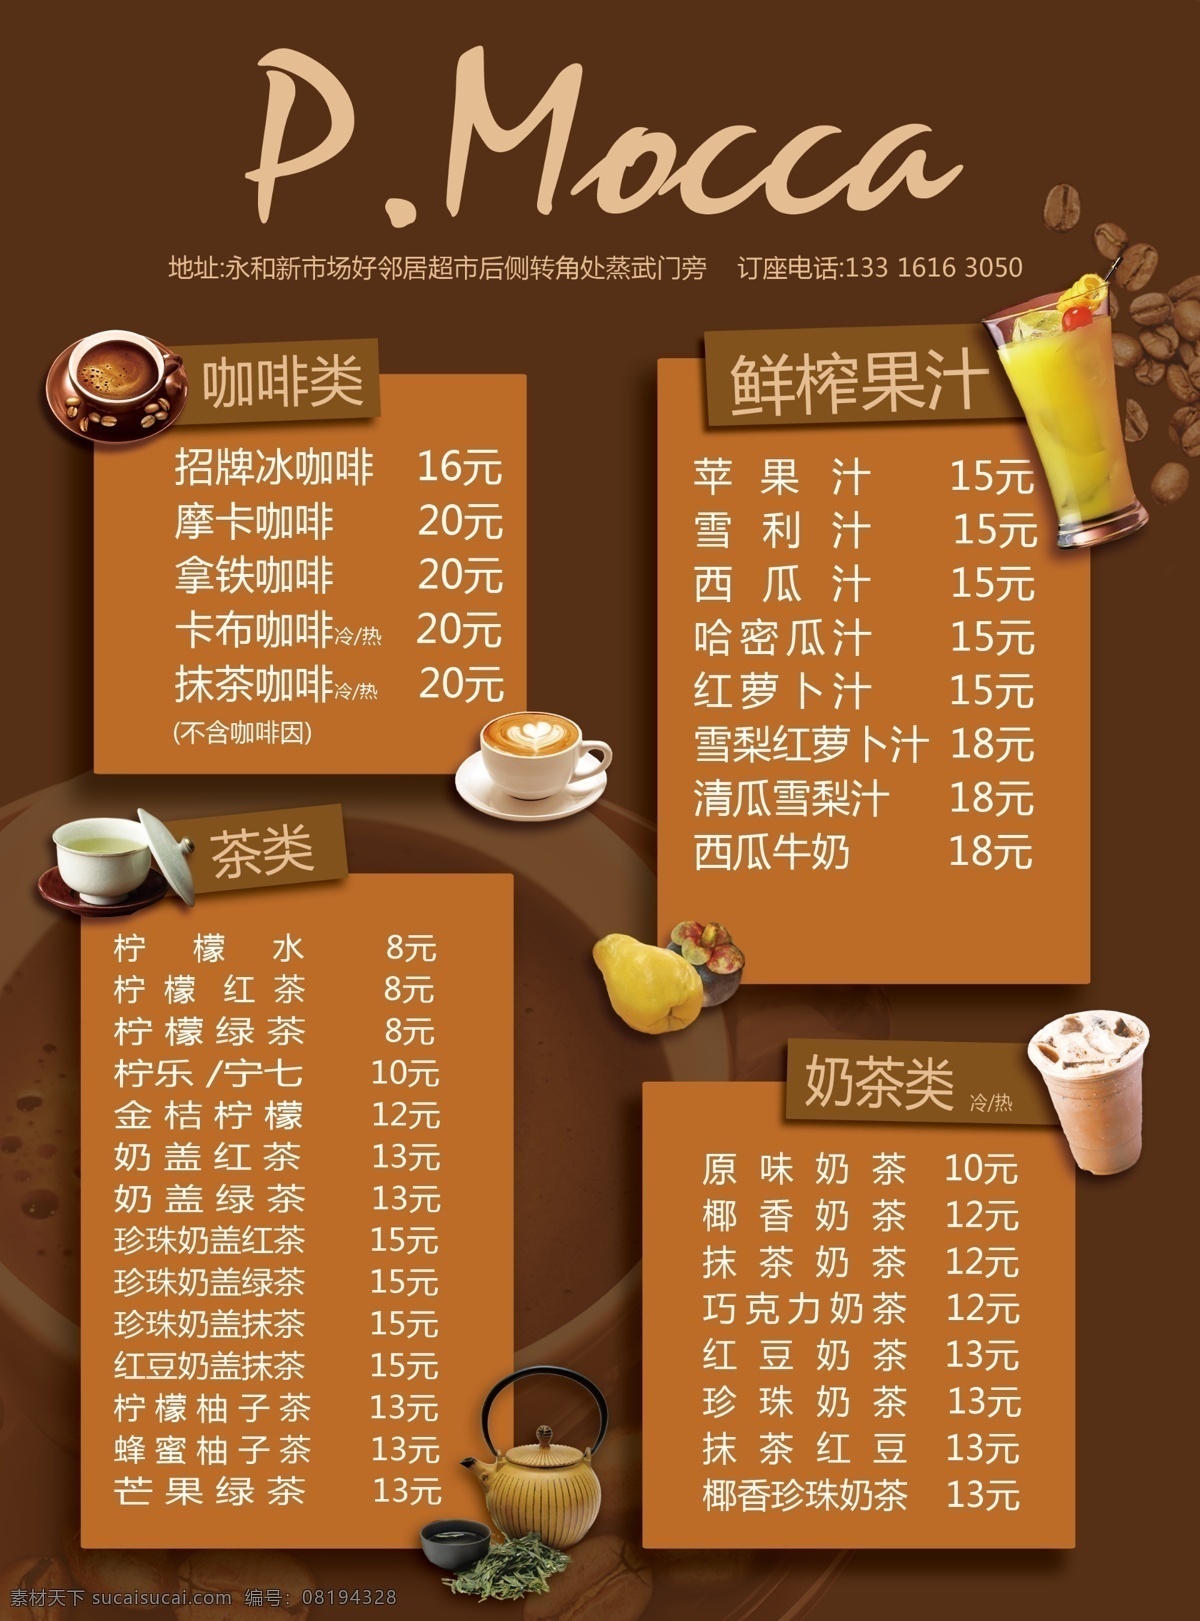 下午 茶 菜谱 单 菜单 广告 海报